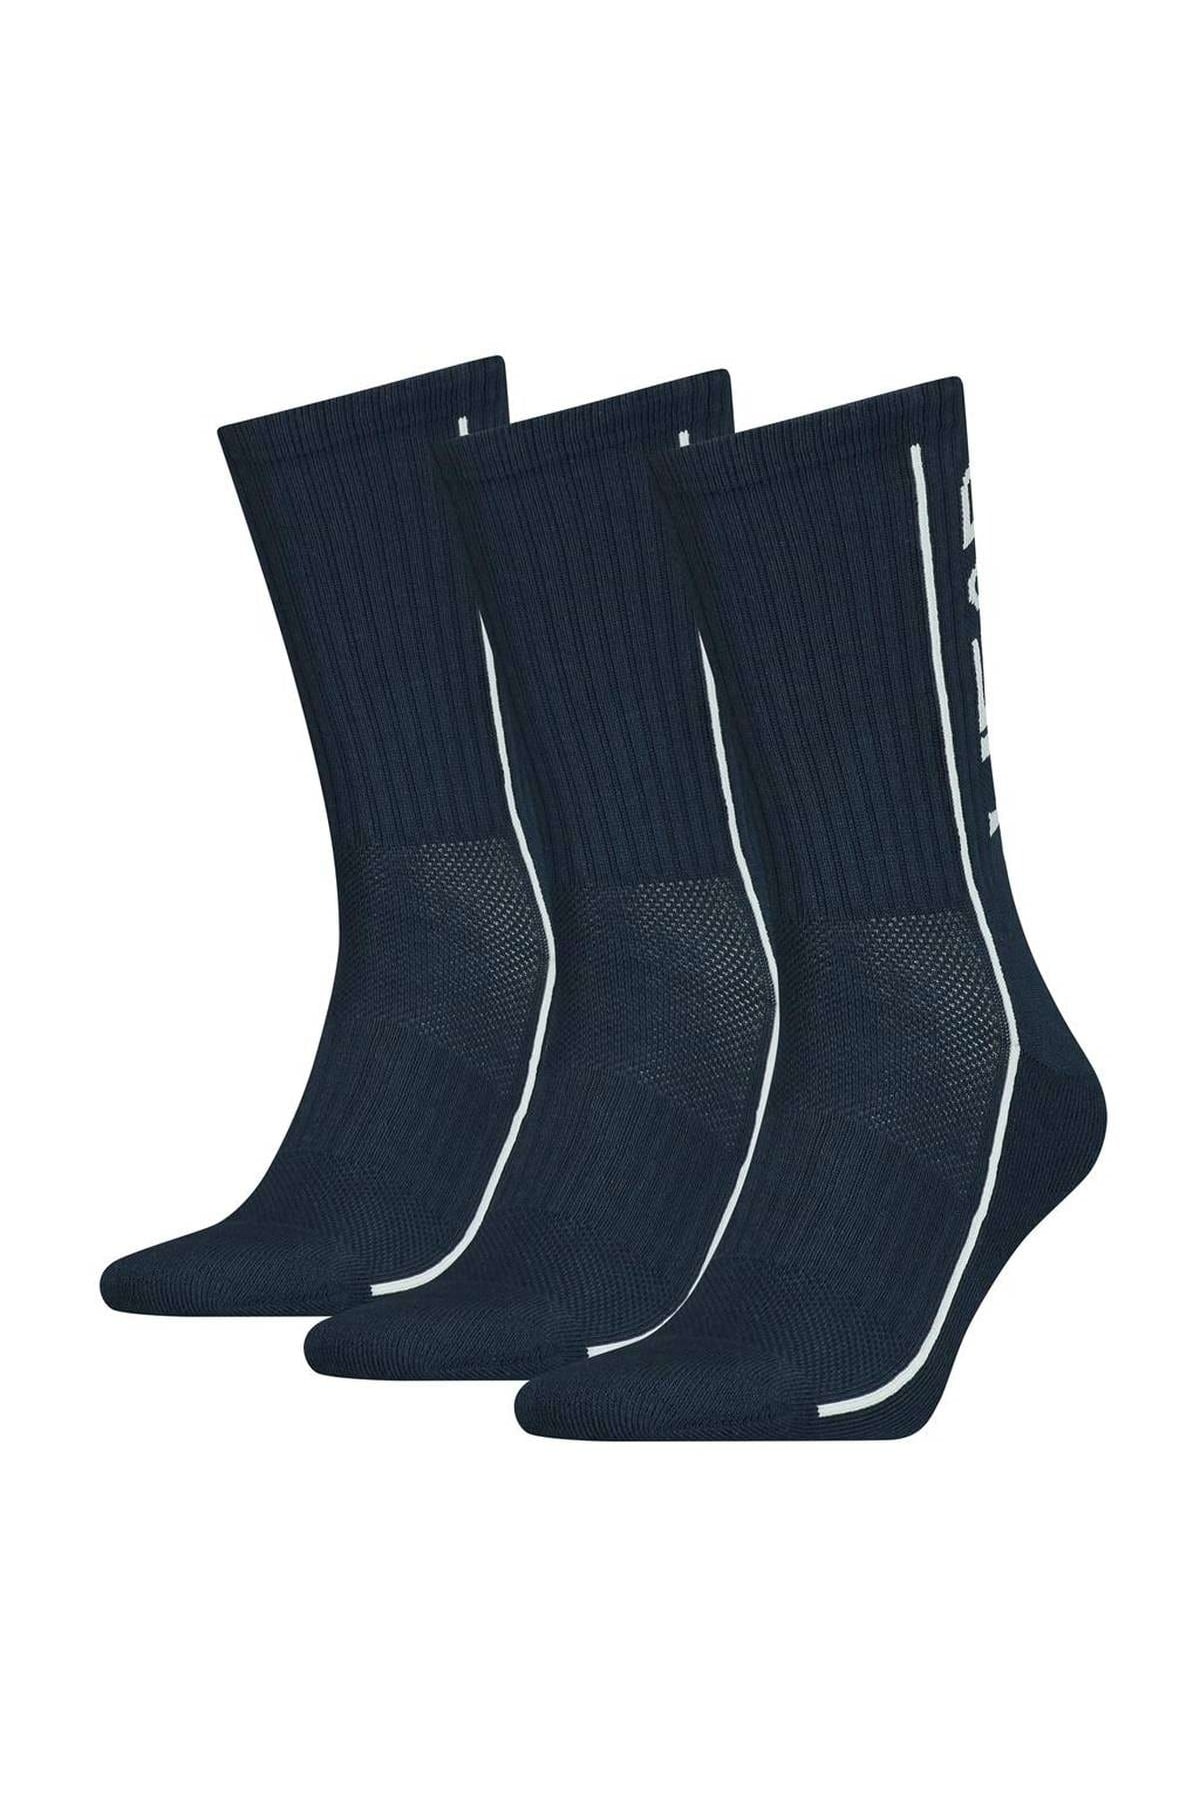 Head Socken Blau 3-teilig Fast ausverkauft